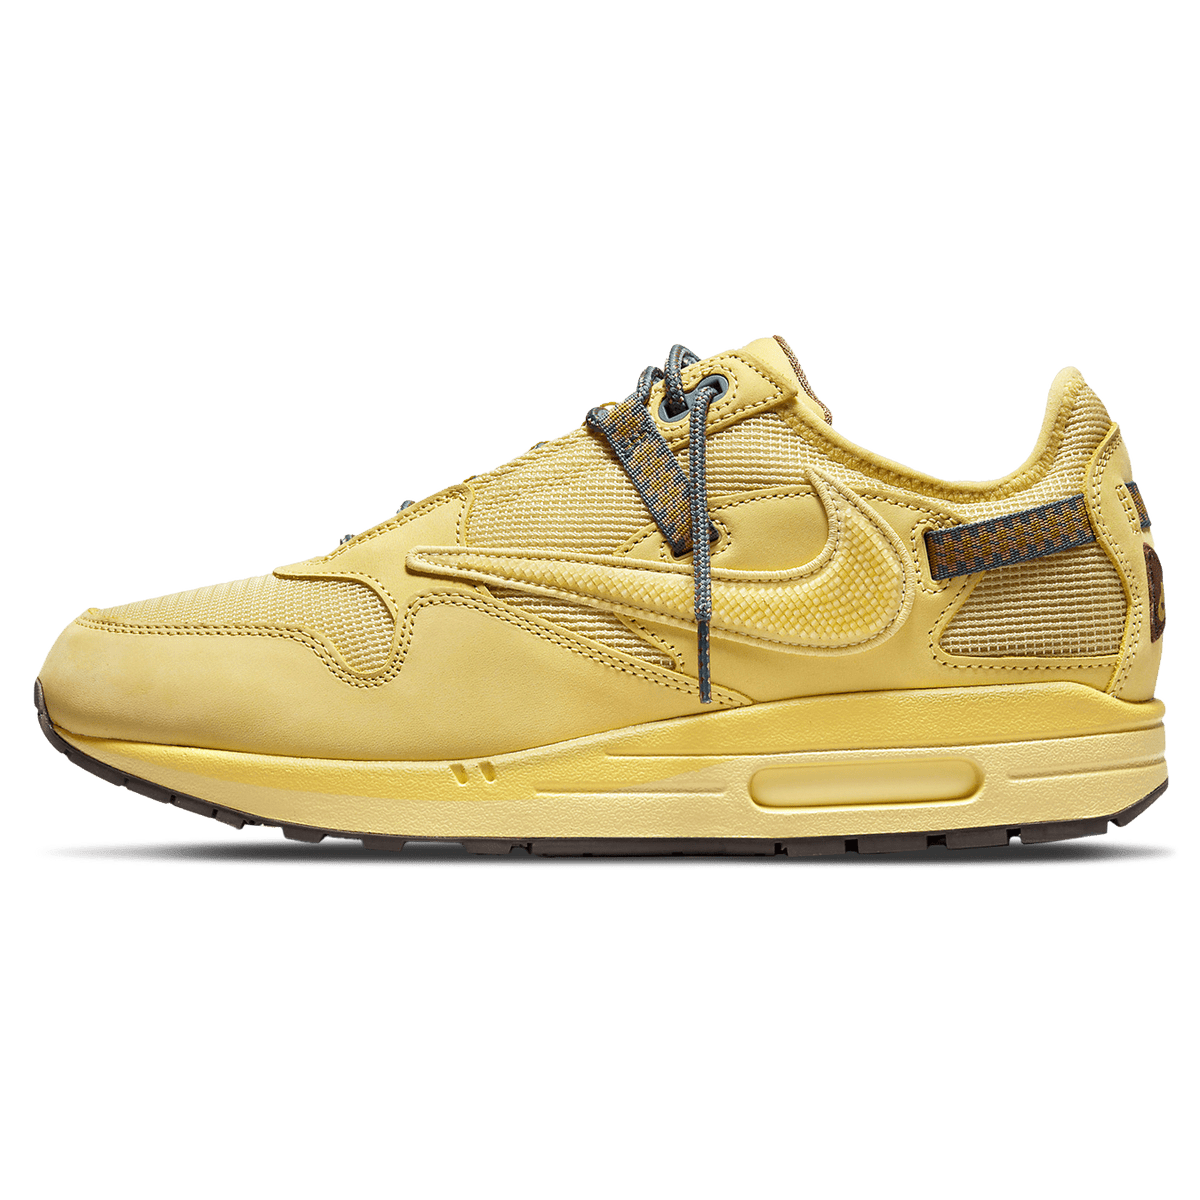 Nike x Louis Vuitton Air force 1 by Virgil Abloh Met Gold / Met Gold /  Baroque Brown / Black Low Top Sneakers - Sneak in Peace